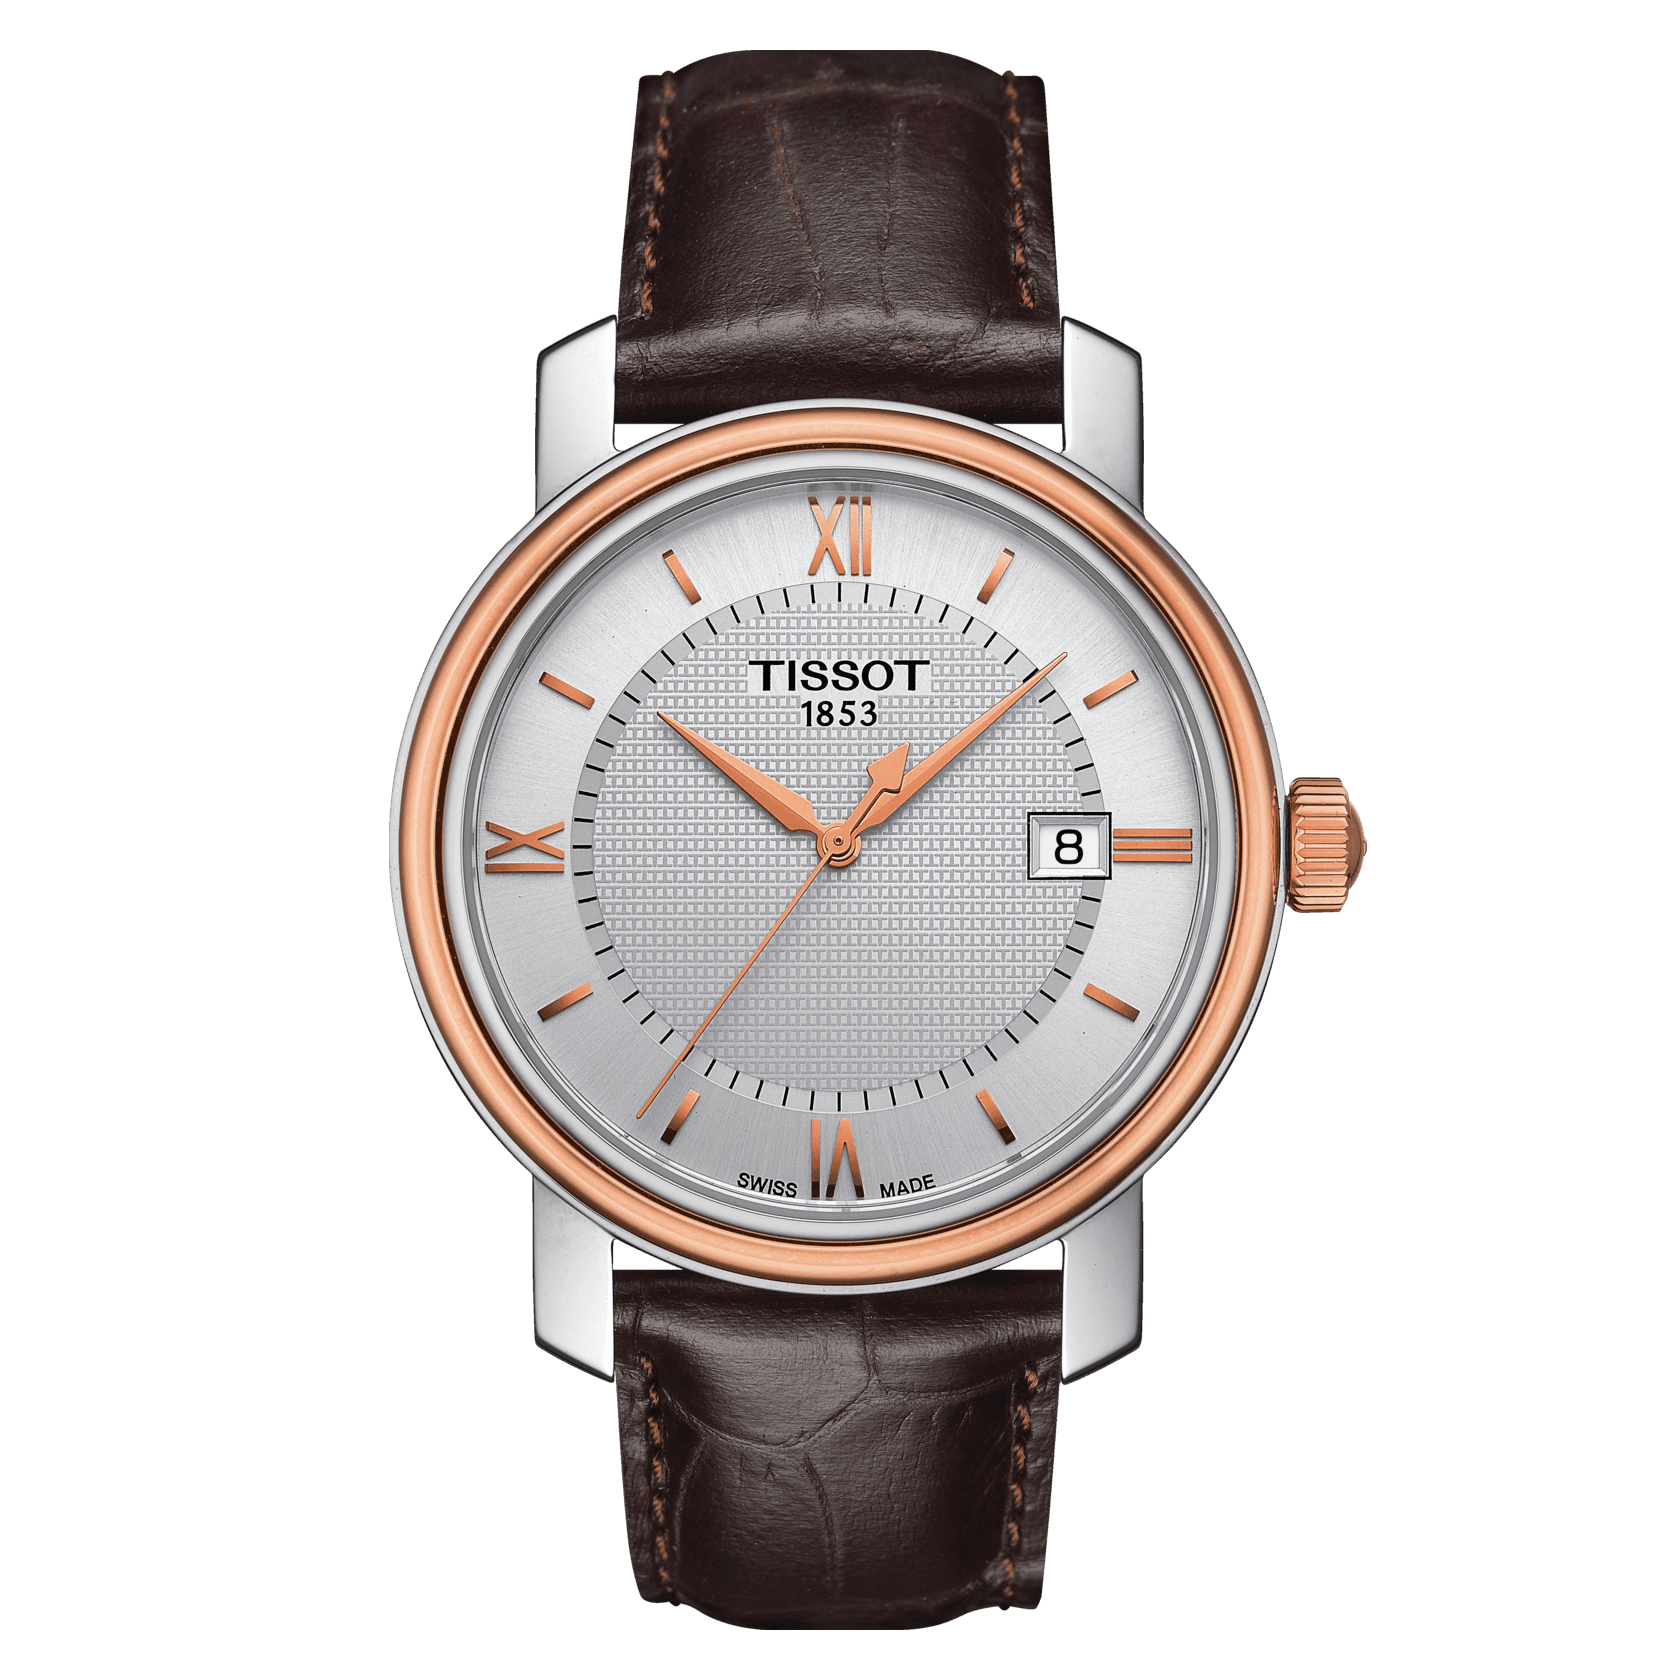 Replica Rolex Watch Sale